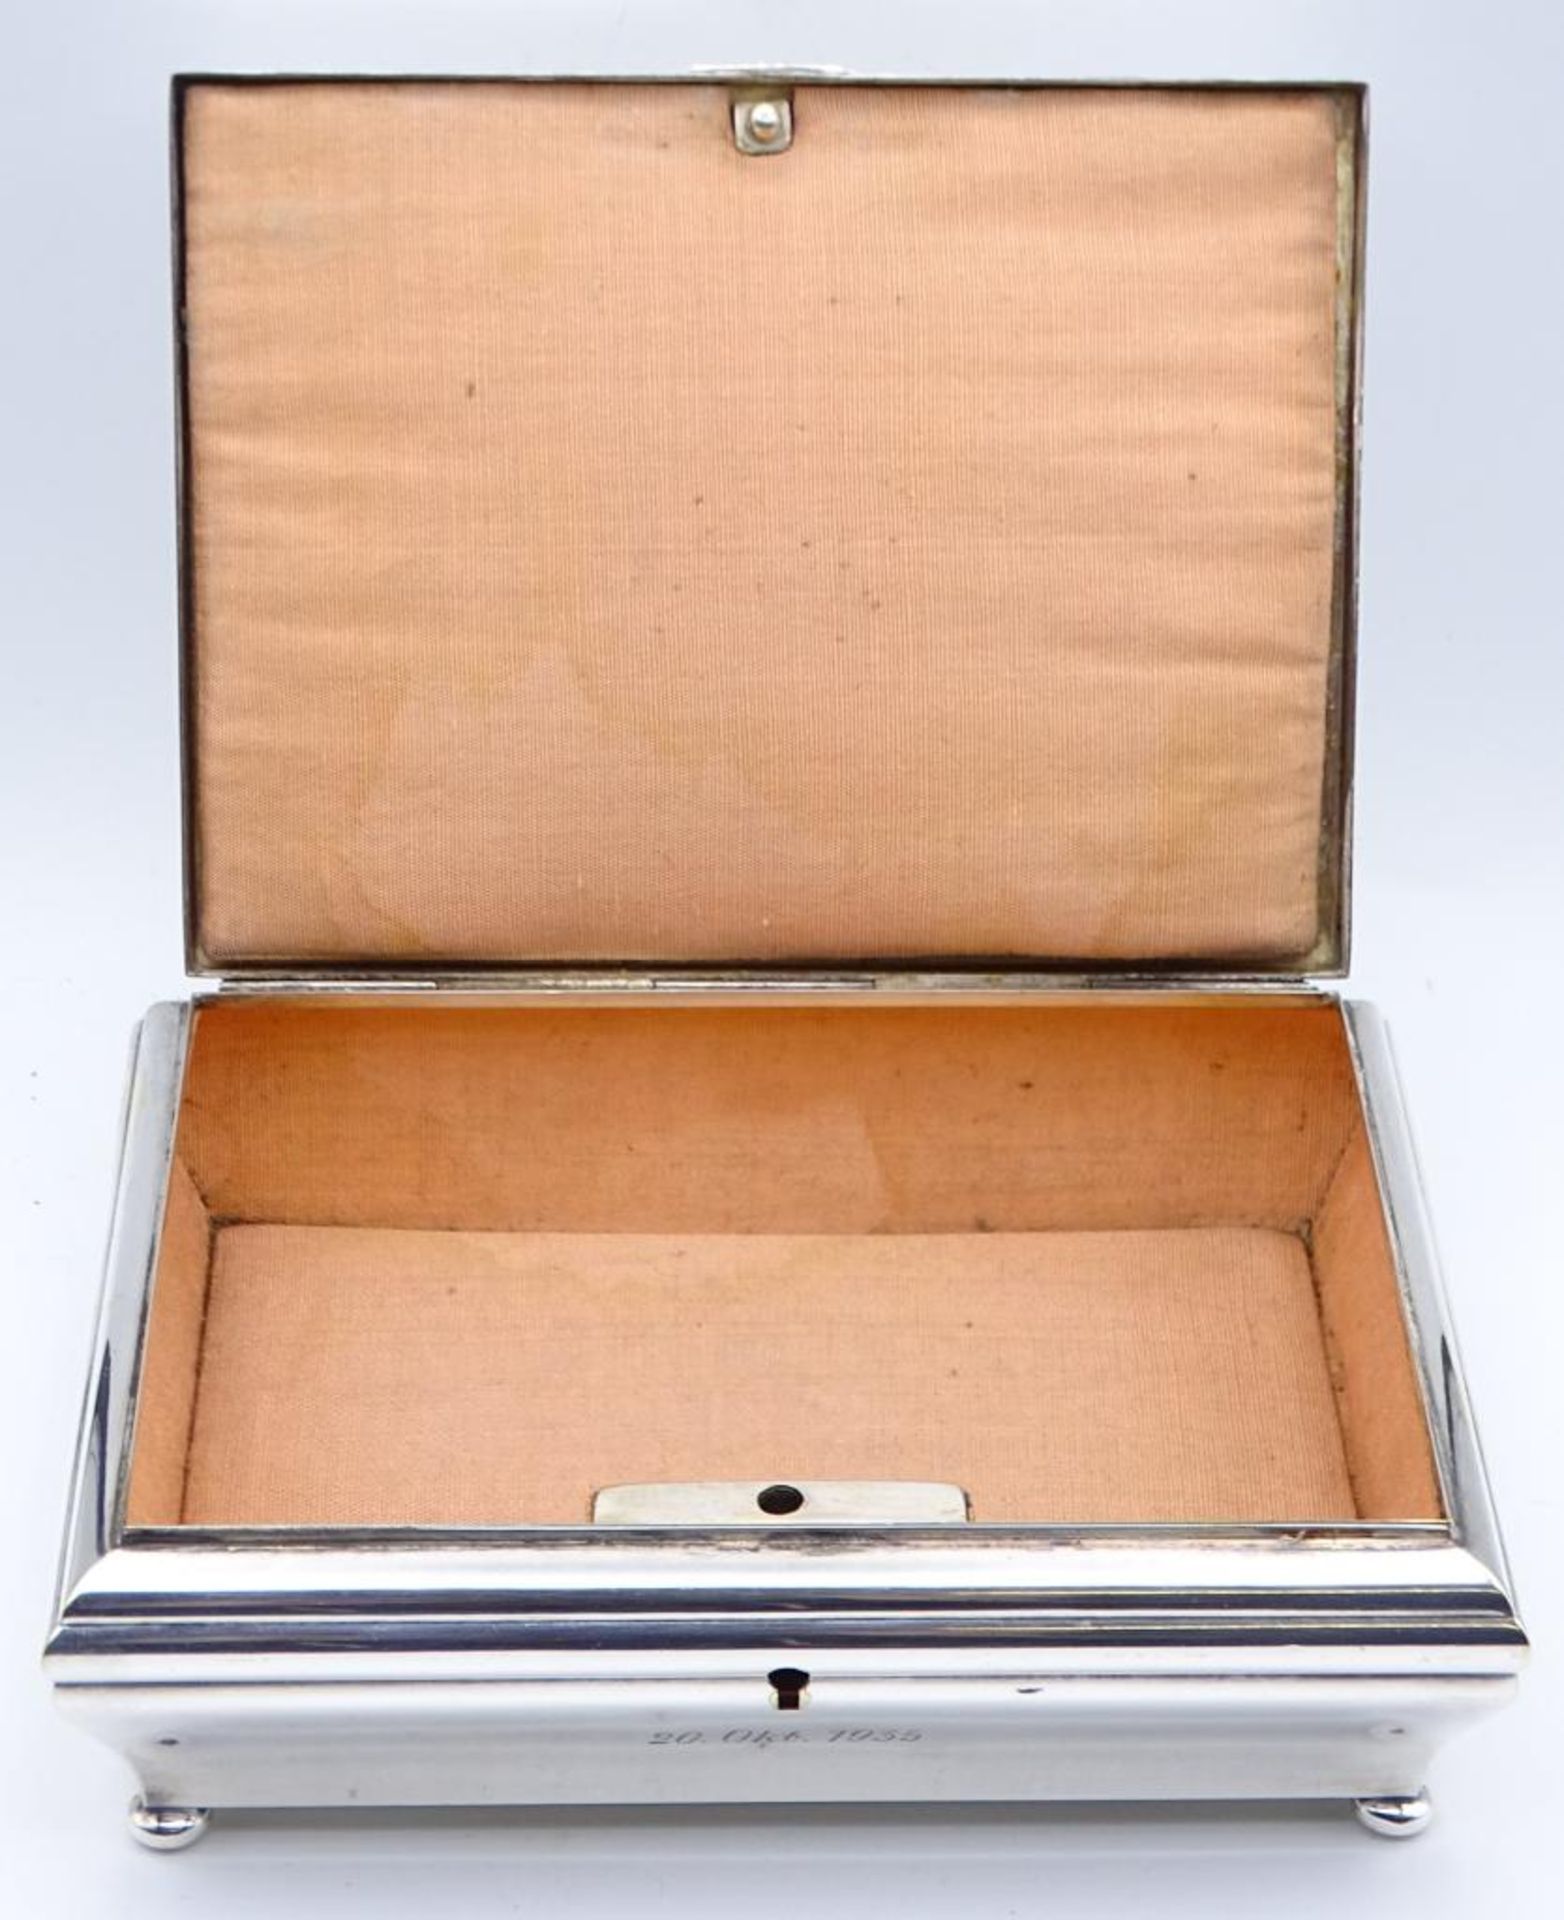 Wohl Zigarrenkasten,abschließbar, WMF,Ziermonogramm, datiert 1935,versilbert,guter Zustand, 13, - Bild 5 aus 9